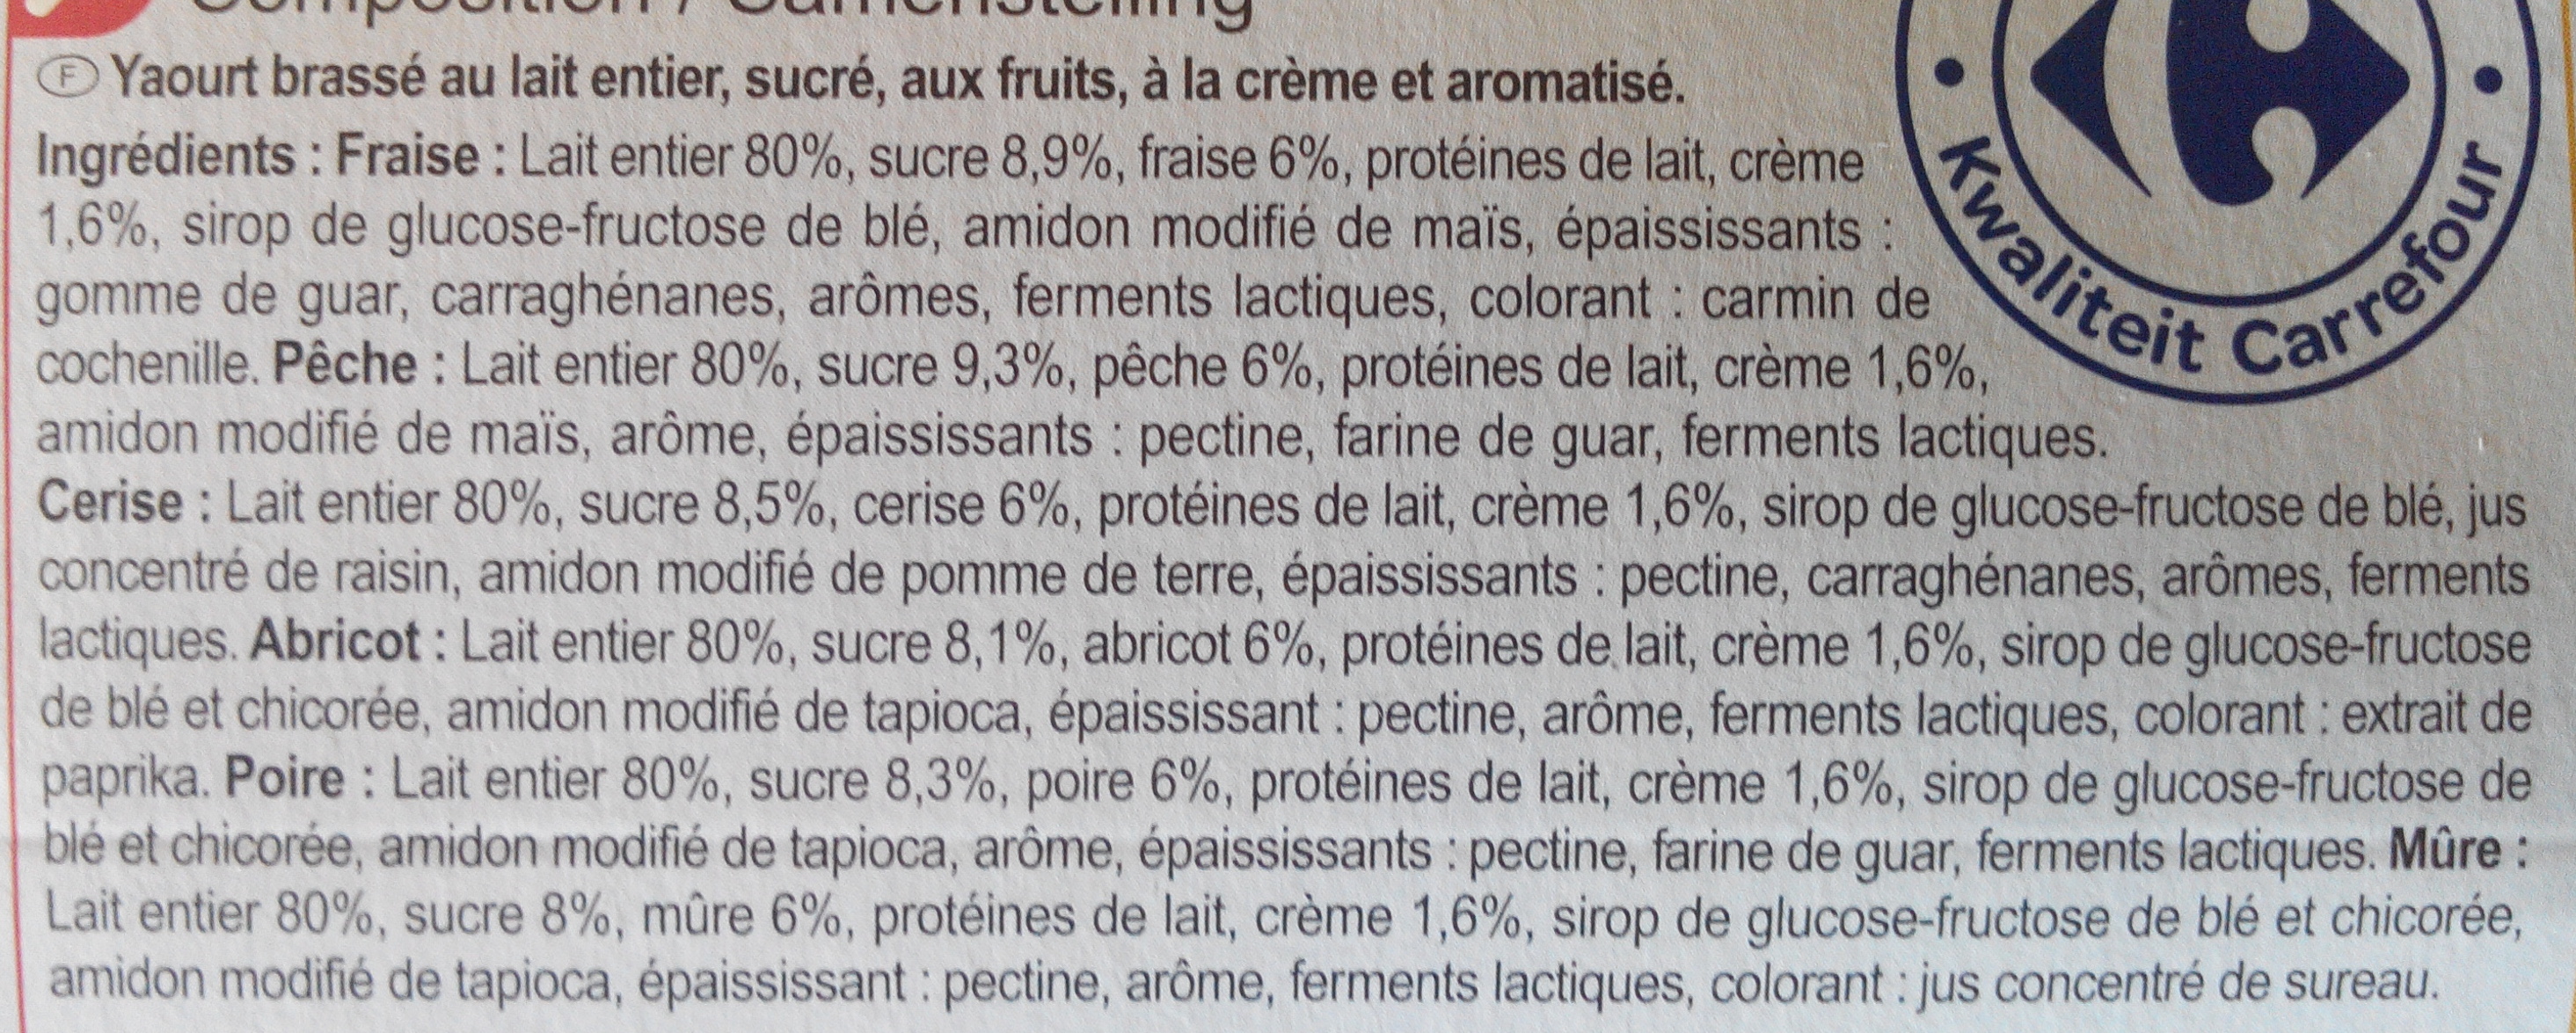 Crémeux FRAMBOISE PECHE FRAISE ABRICOT - Ingredients - fr